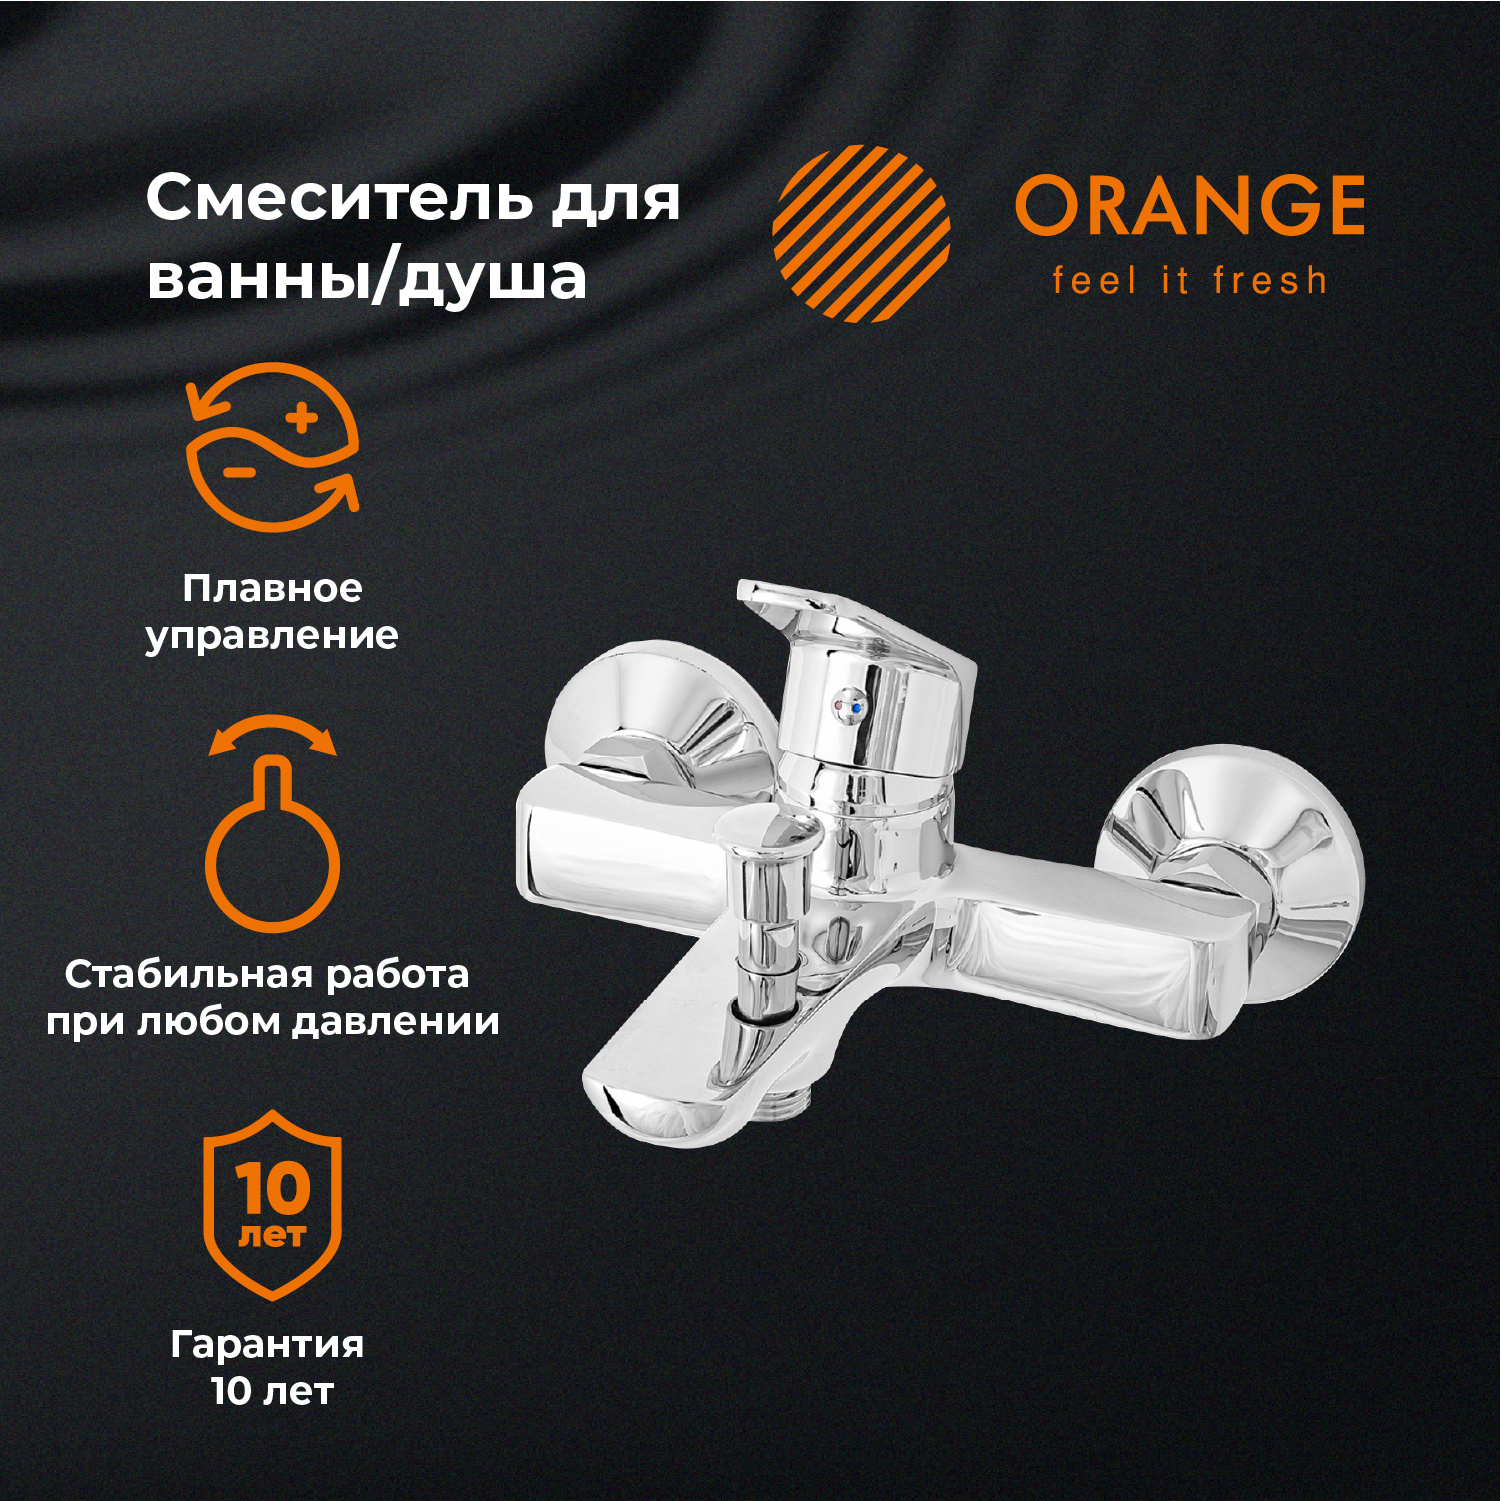 Смеситель для ванны и душа Orange FELIX M14-100cr цвет хром размораживатель замков felix